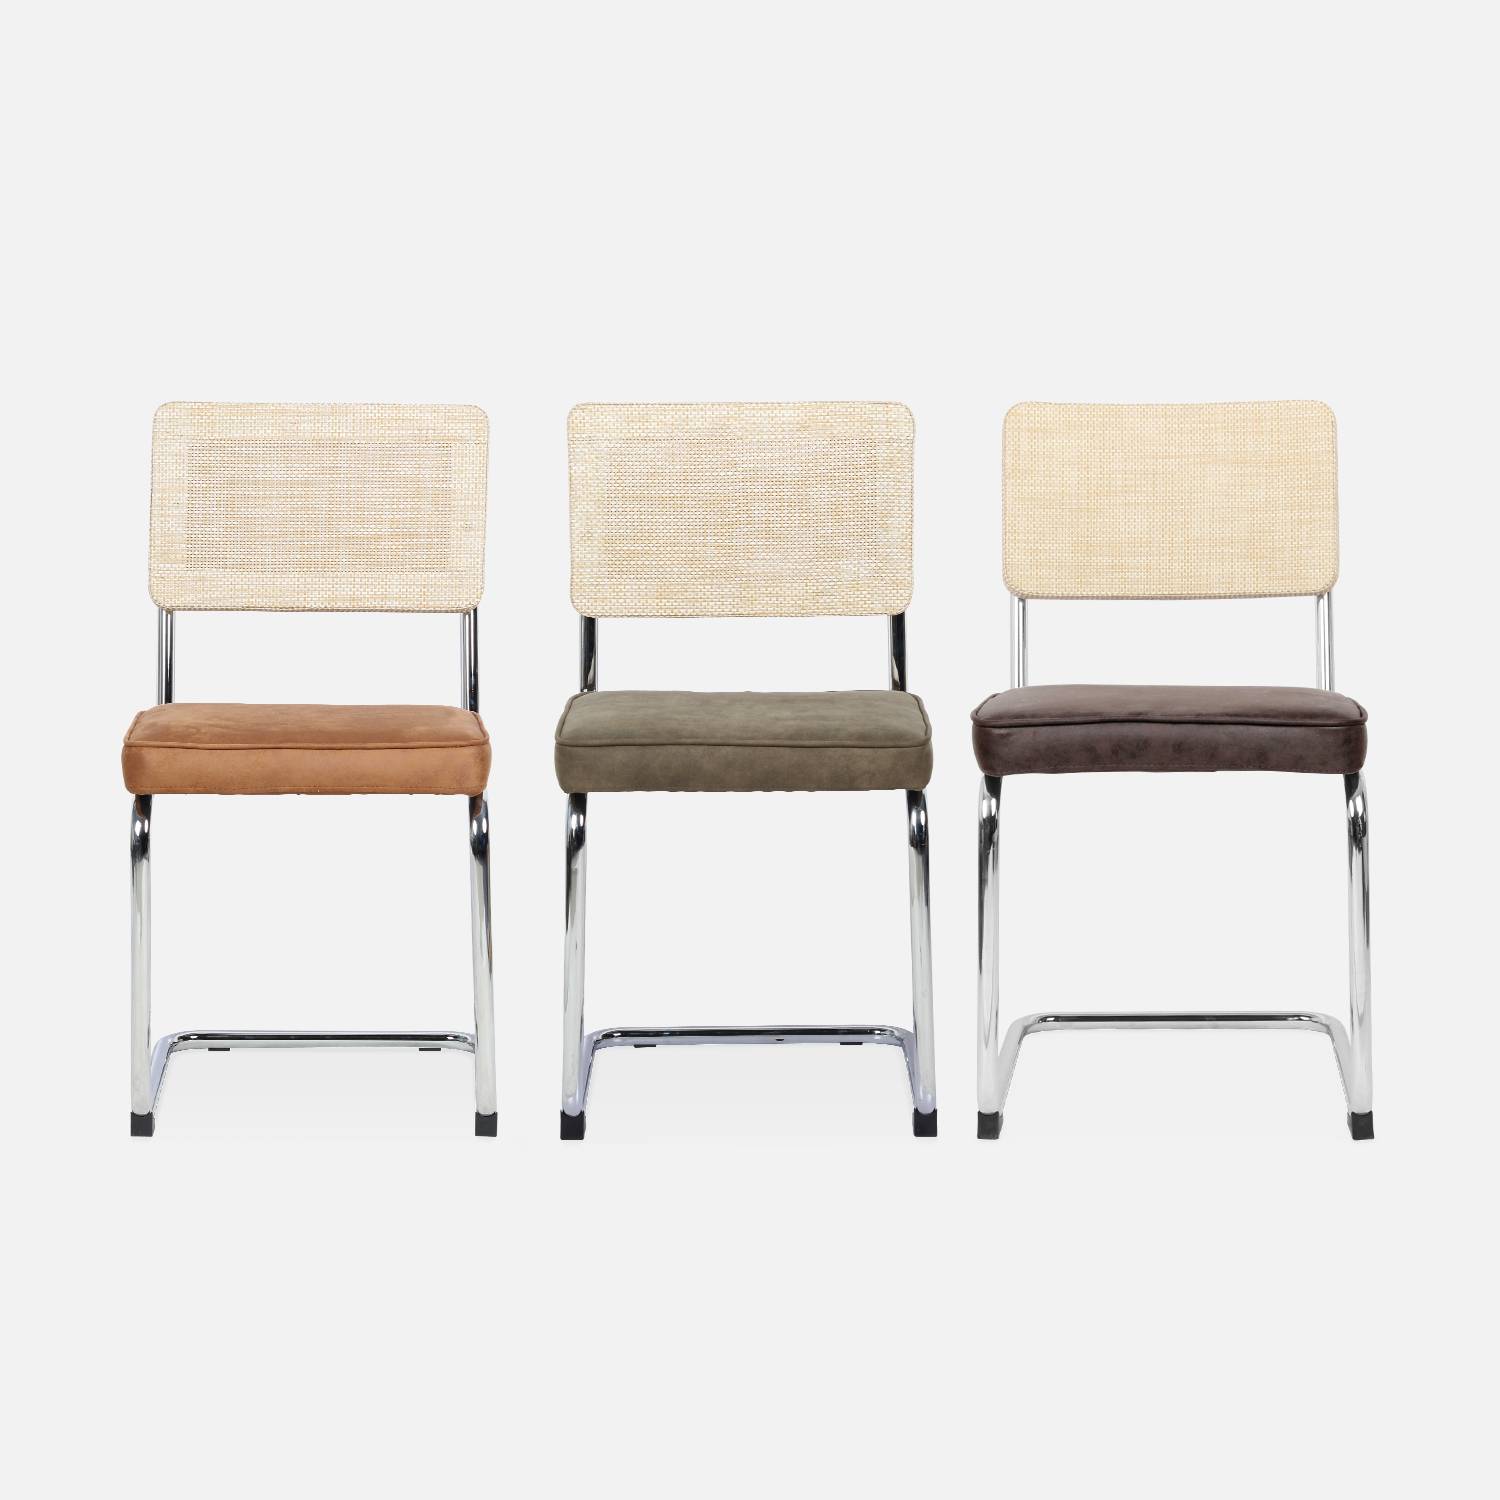 2 cadeiras cantilever - Maja - tecido castanho claro e resina com efeito rattan, 46 x 54,5 x 84,5 cm Photo8